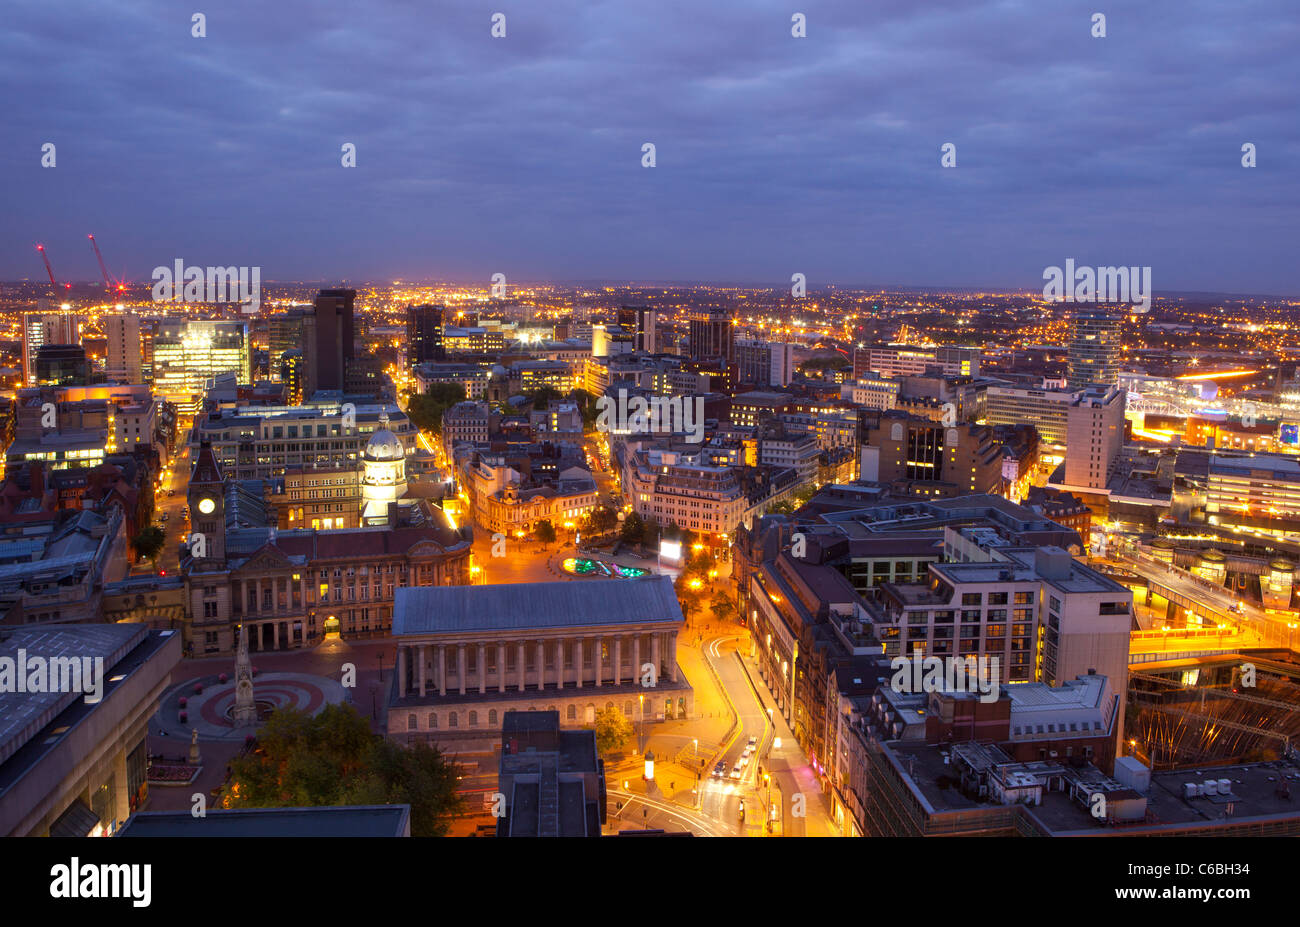 Stadtbild von Birmingham City Centre bei Nacht, England, UK Stockfoto